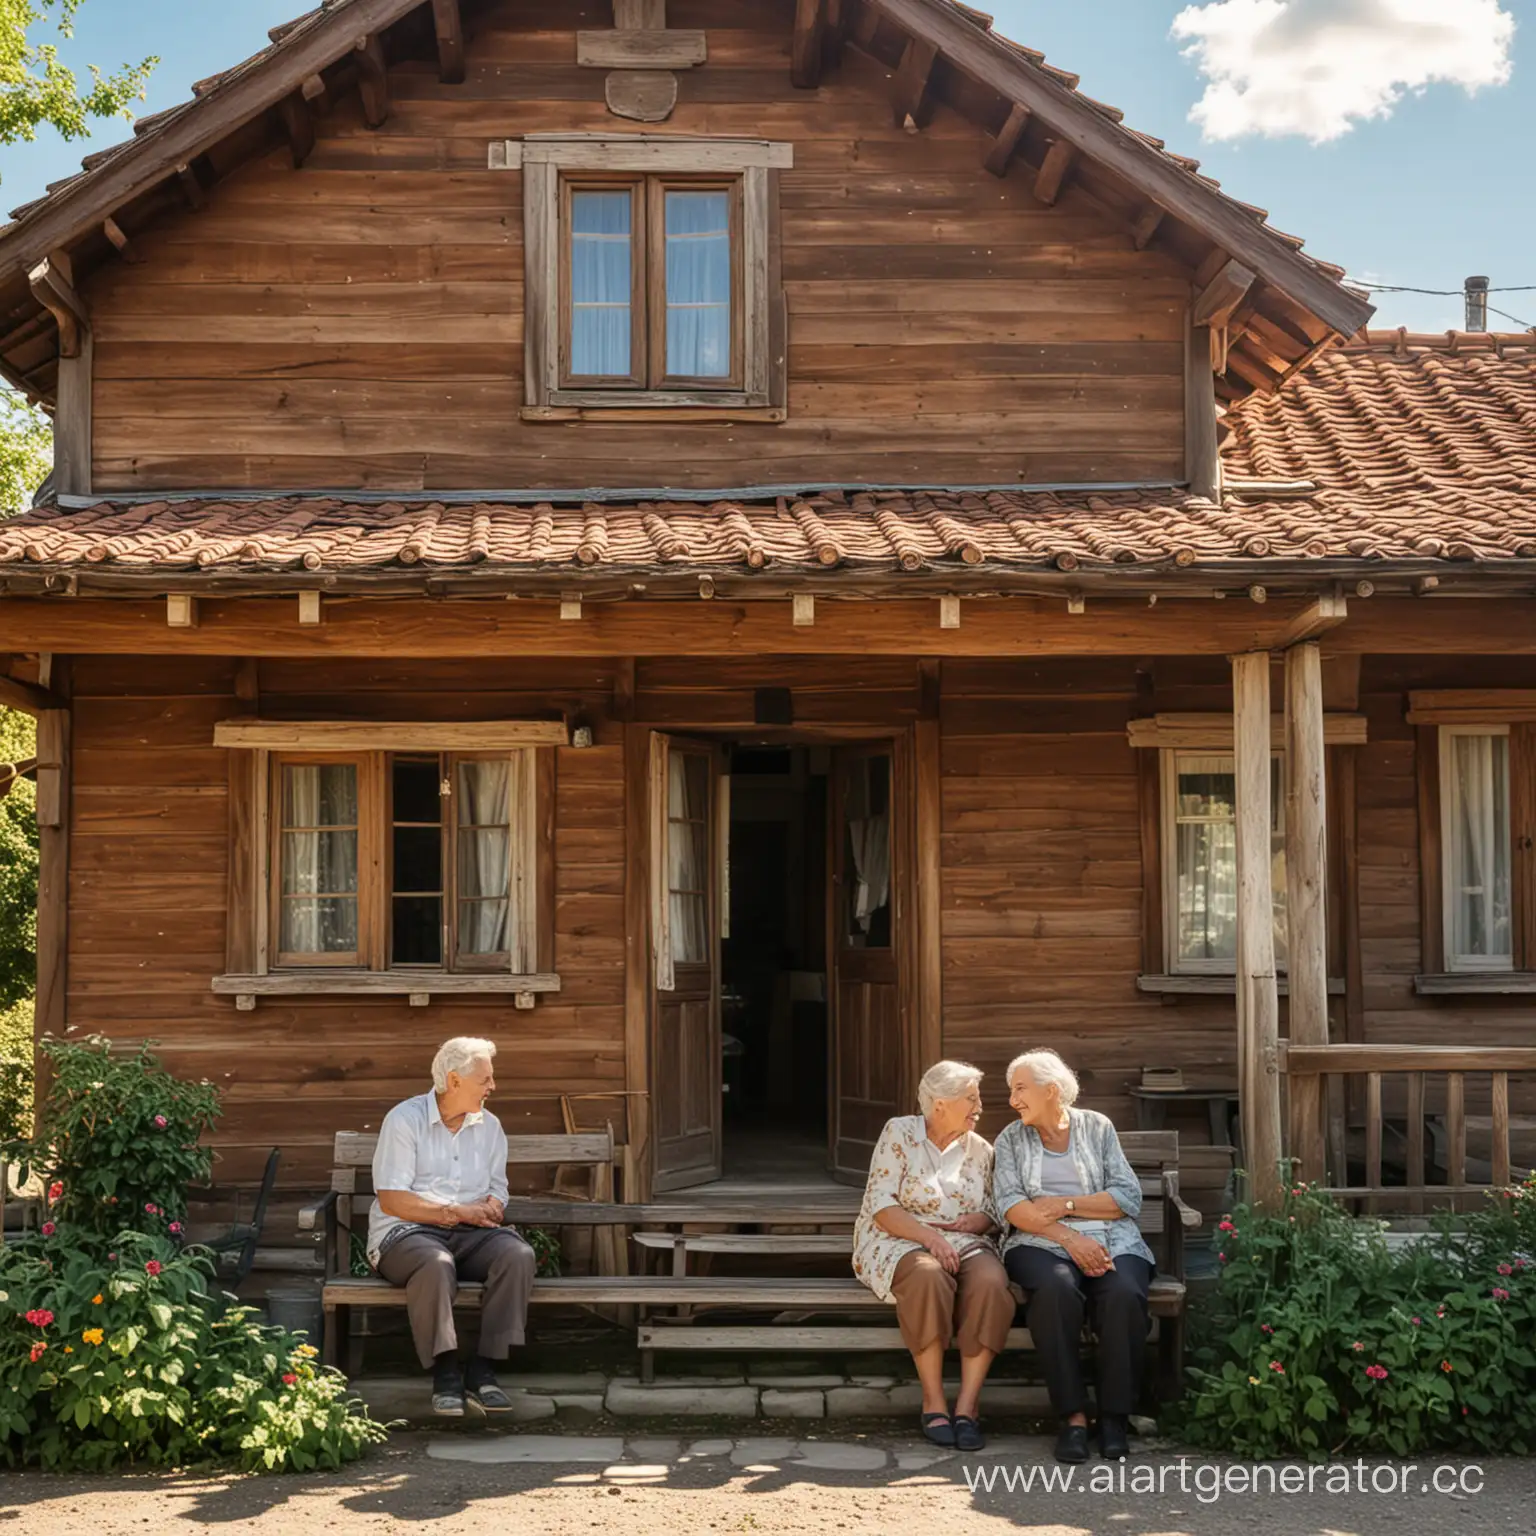 деревянный старый дом, перед домом на скамейке сидят дедушка и бабушка, солнечная погода